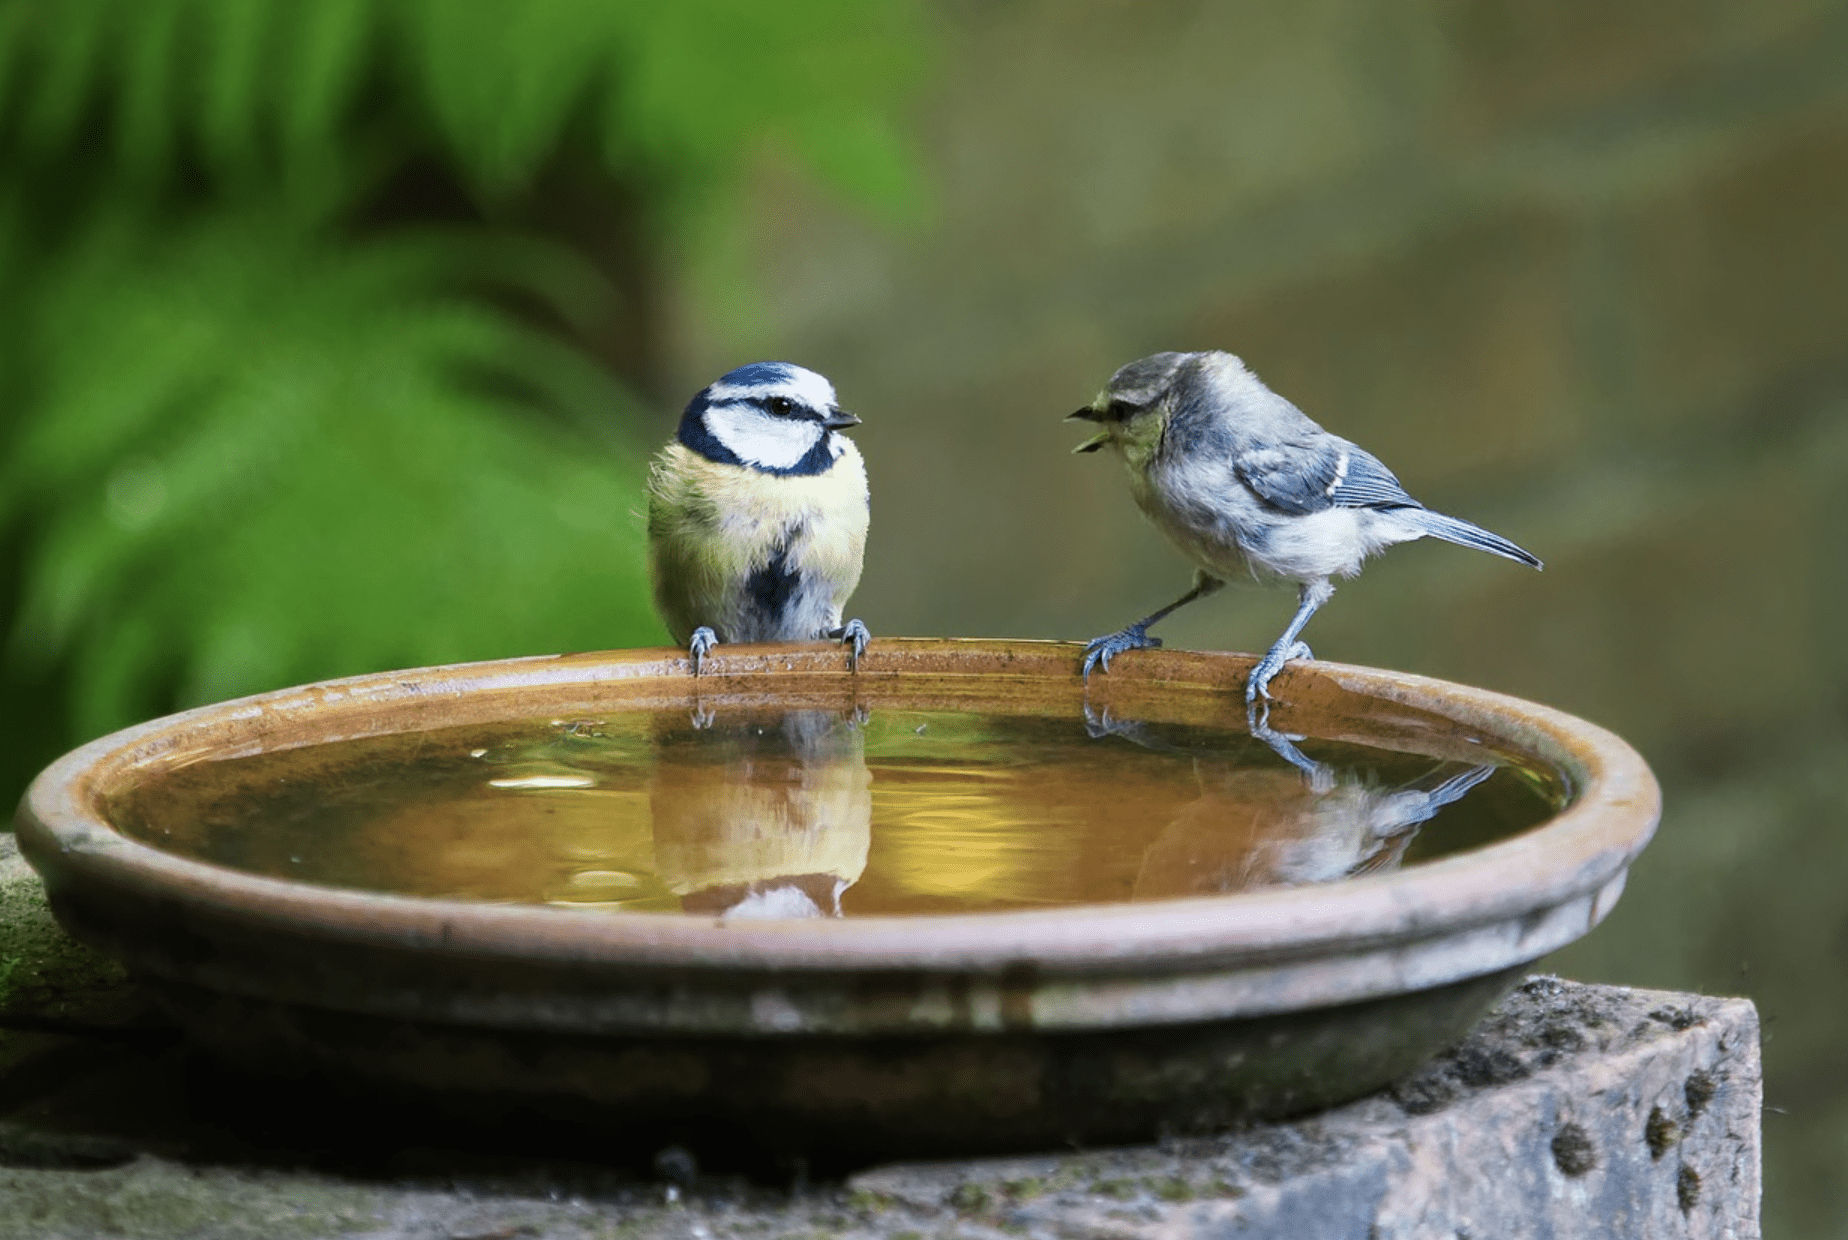 two bird on the birdbath